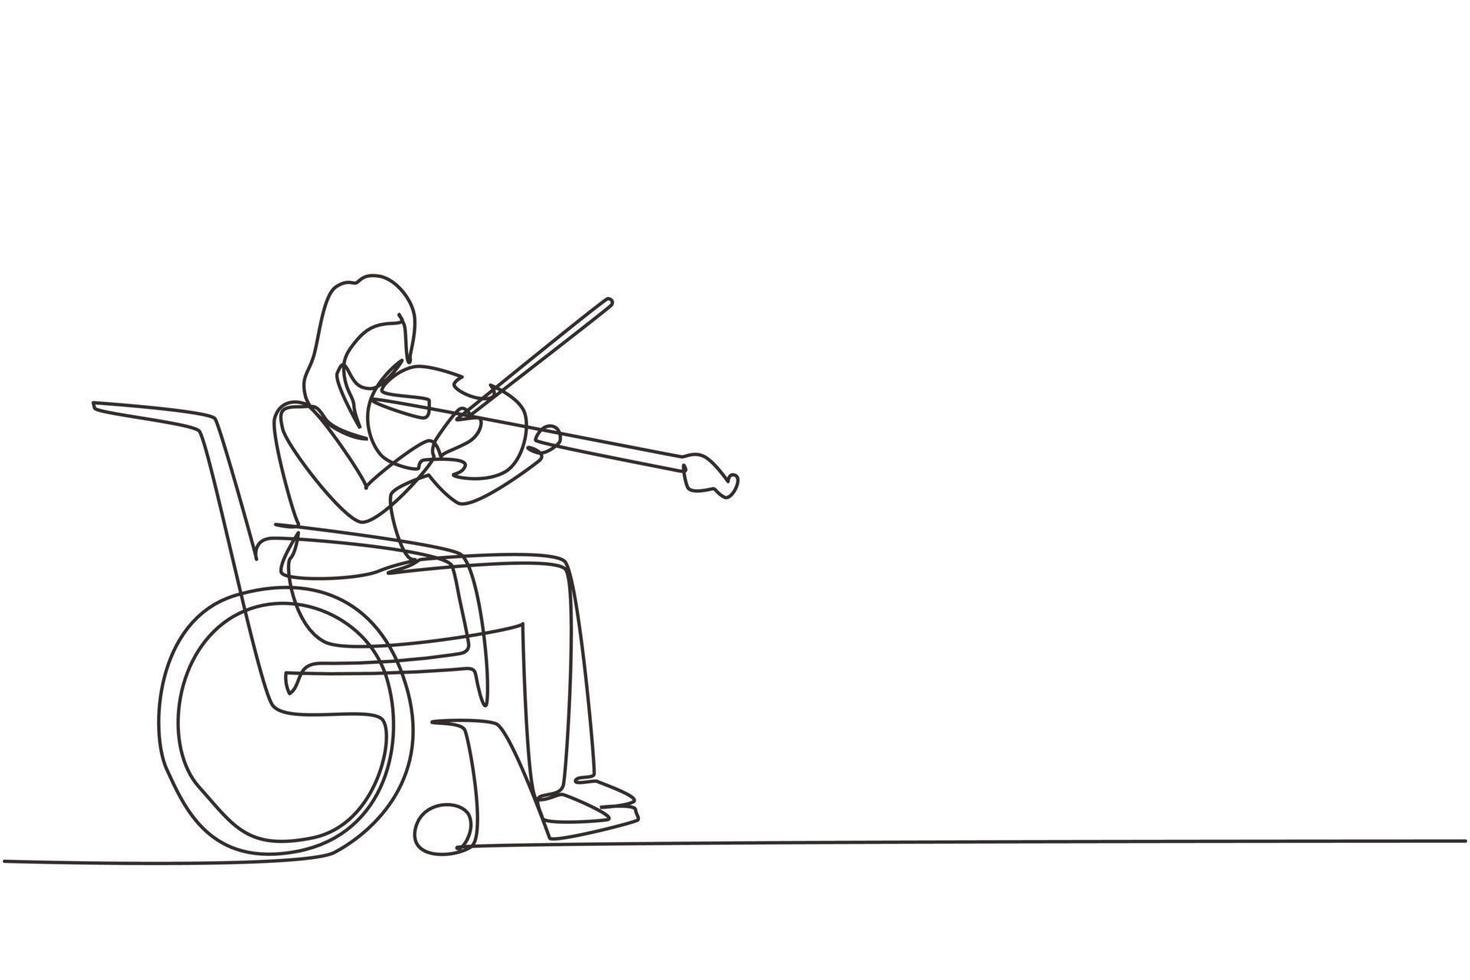 unico disegno a linea continua disabilità e musica. donna in sedia a rotelle suona il violino. disabile fisico, handicappato. persona in ospedale. paziente del centro di riabilitazione. vettore di disegno di una linea